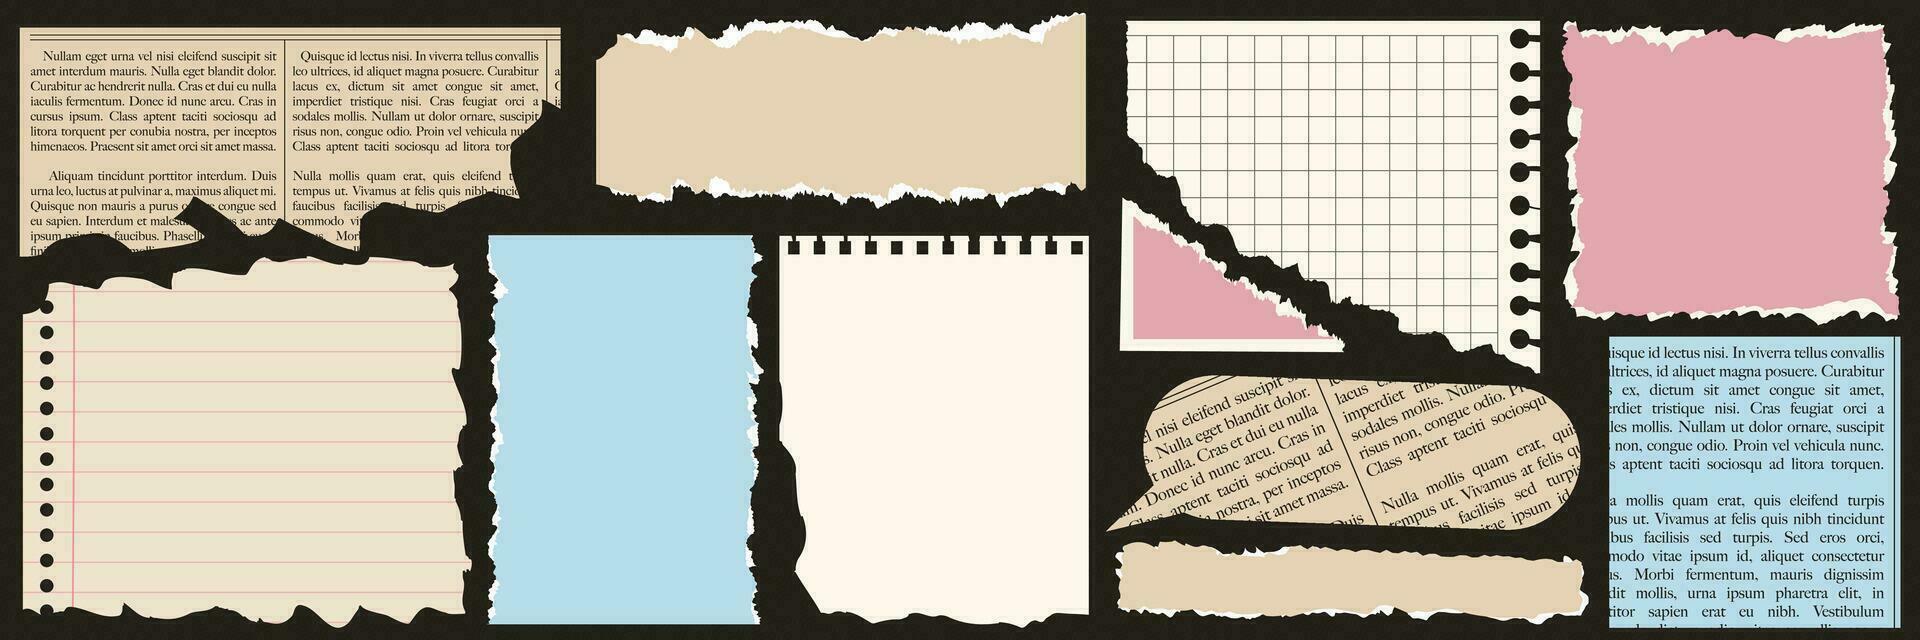 une ensemble de déchiré papier, carnet feuilles, vieux journal. branché éléments pour collage. vecteur contemporain illustration.